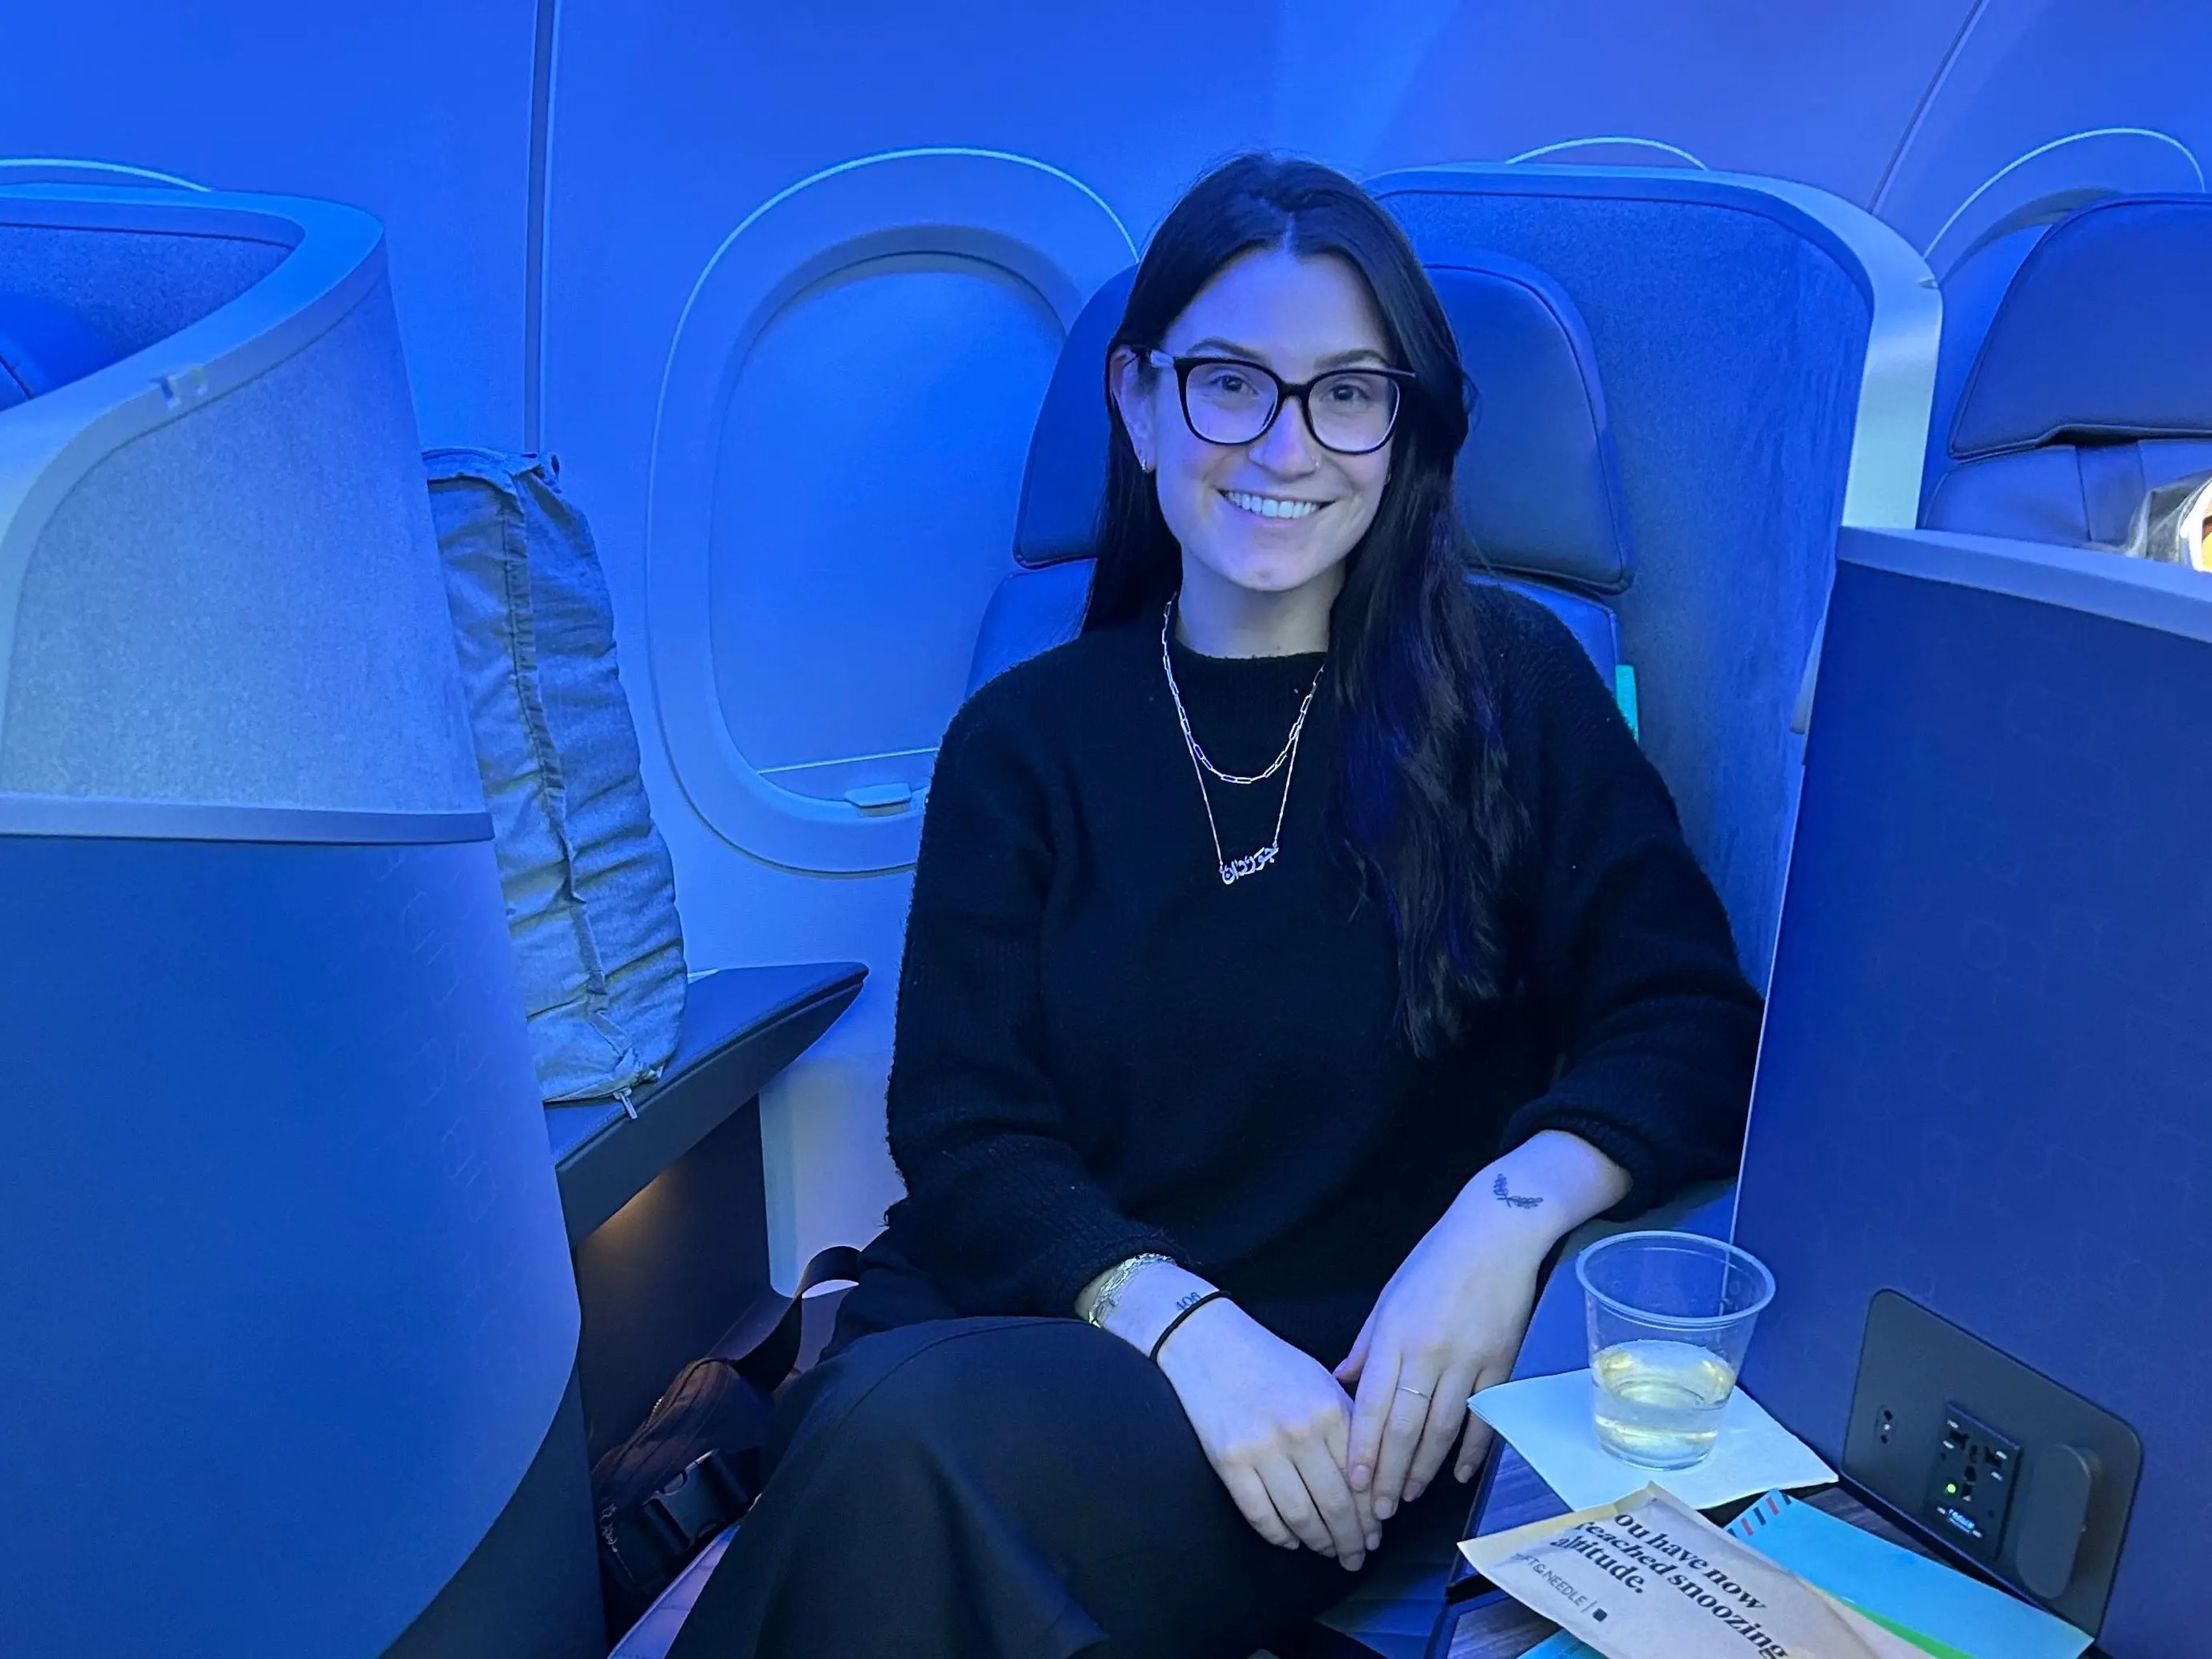 La reportera de Business Insider se unió a JetBlue en su vuelo inaugural a París en junio.